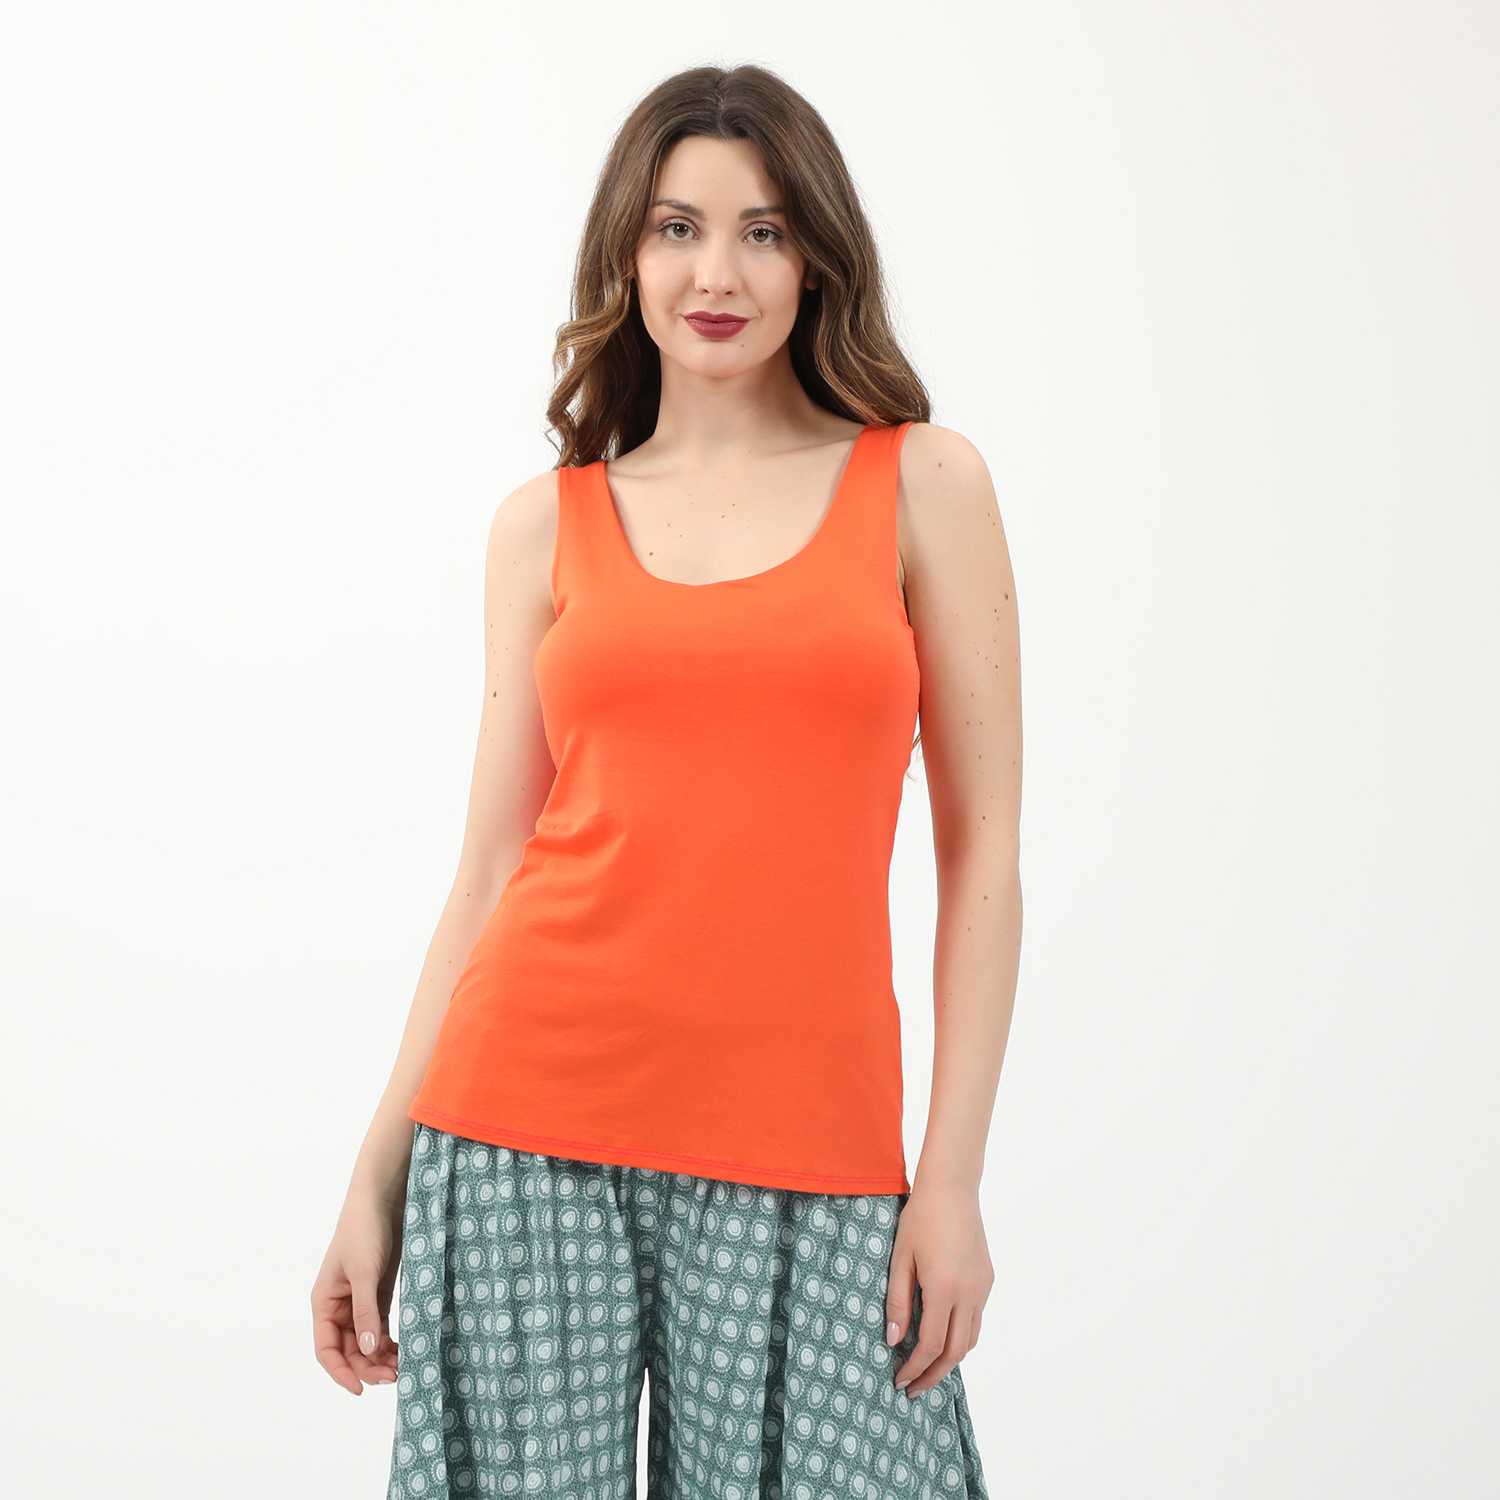 Γυναικεία/Ρούχα/Μπλούζες/Αμάνικες ATTRATTIVO - Γυναικείο top ATTRATTIVO πορτοκαλί